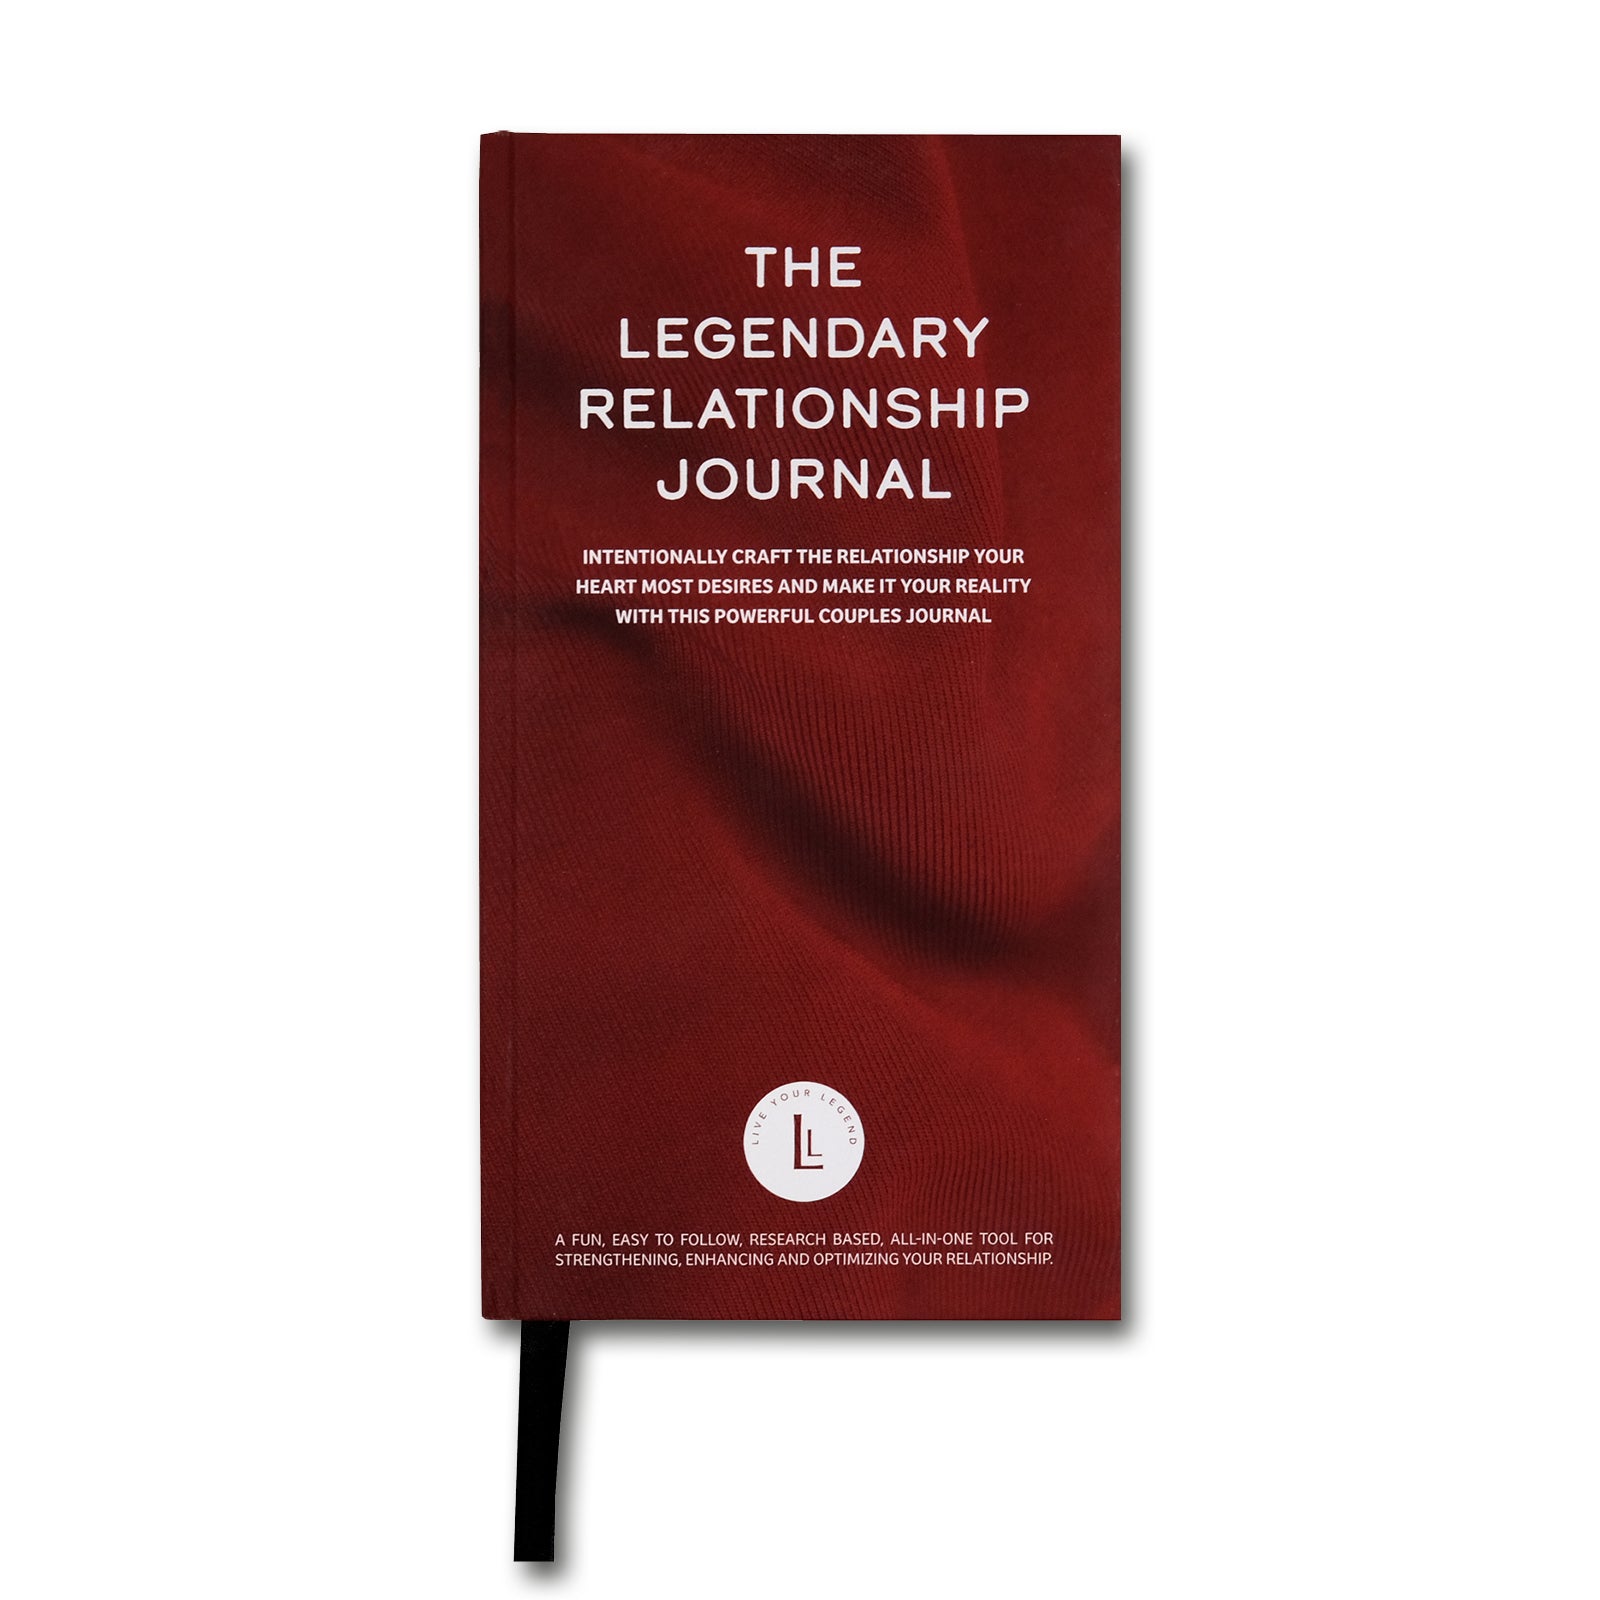 The Legendary Relationship Journal